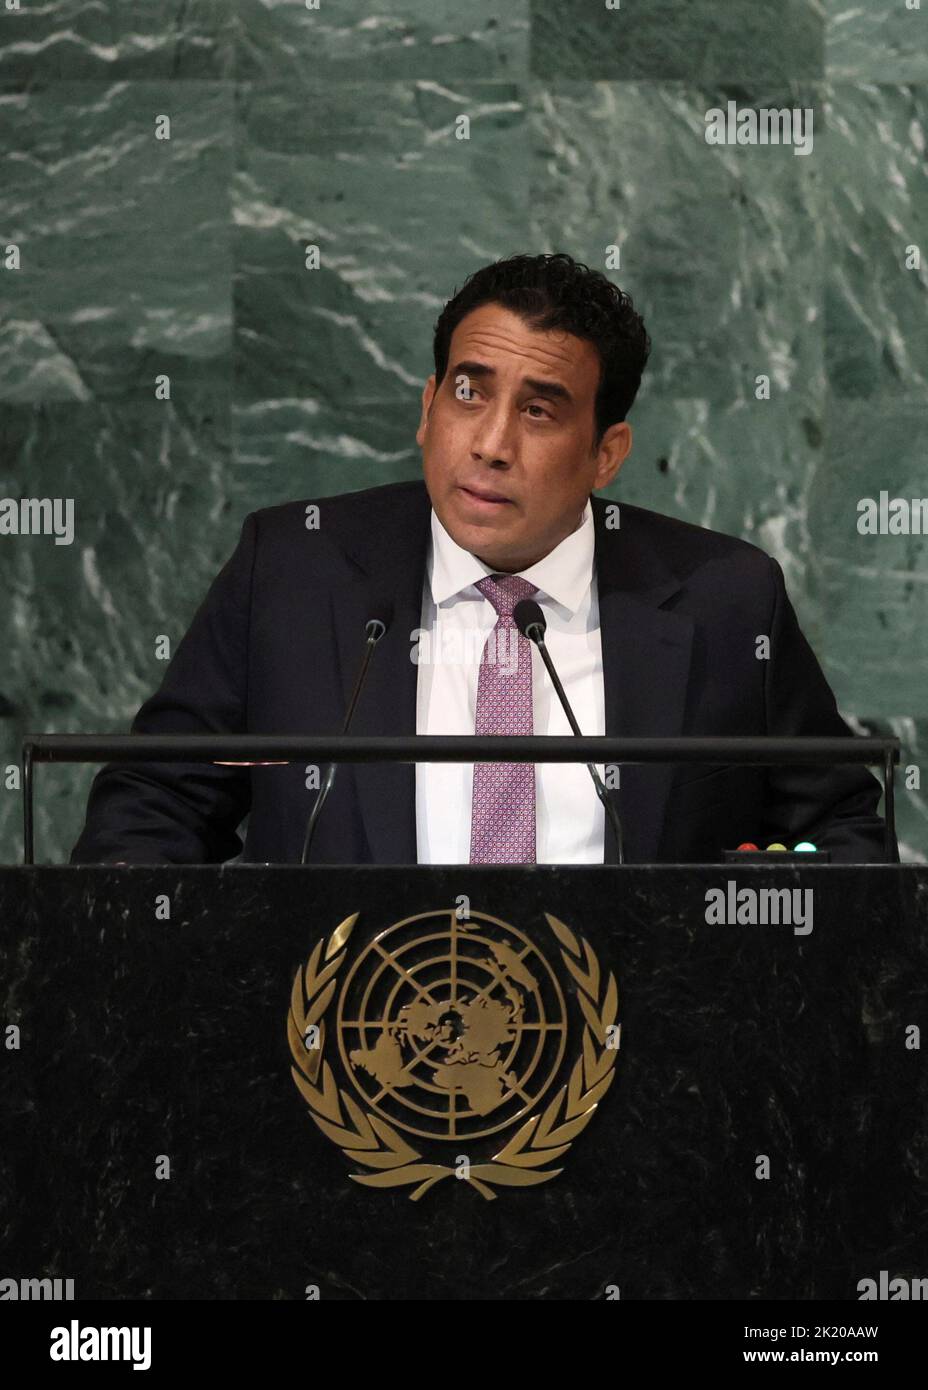 Le président libyen, Mohamed Younis Menfi, s'adresse à la session de 77th de l'Assemblée générale des Nations Unies au siège de l'ONU à New York, aux États-Unis, au 21 septembre 2022. REUTERS/Brendan McDermid Banque D'Images